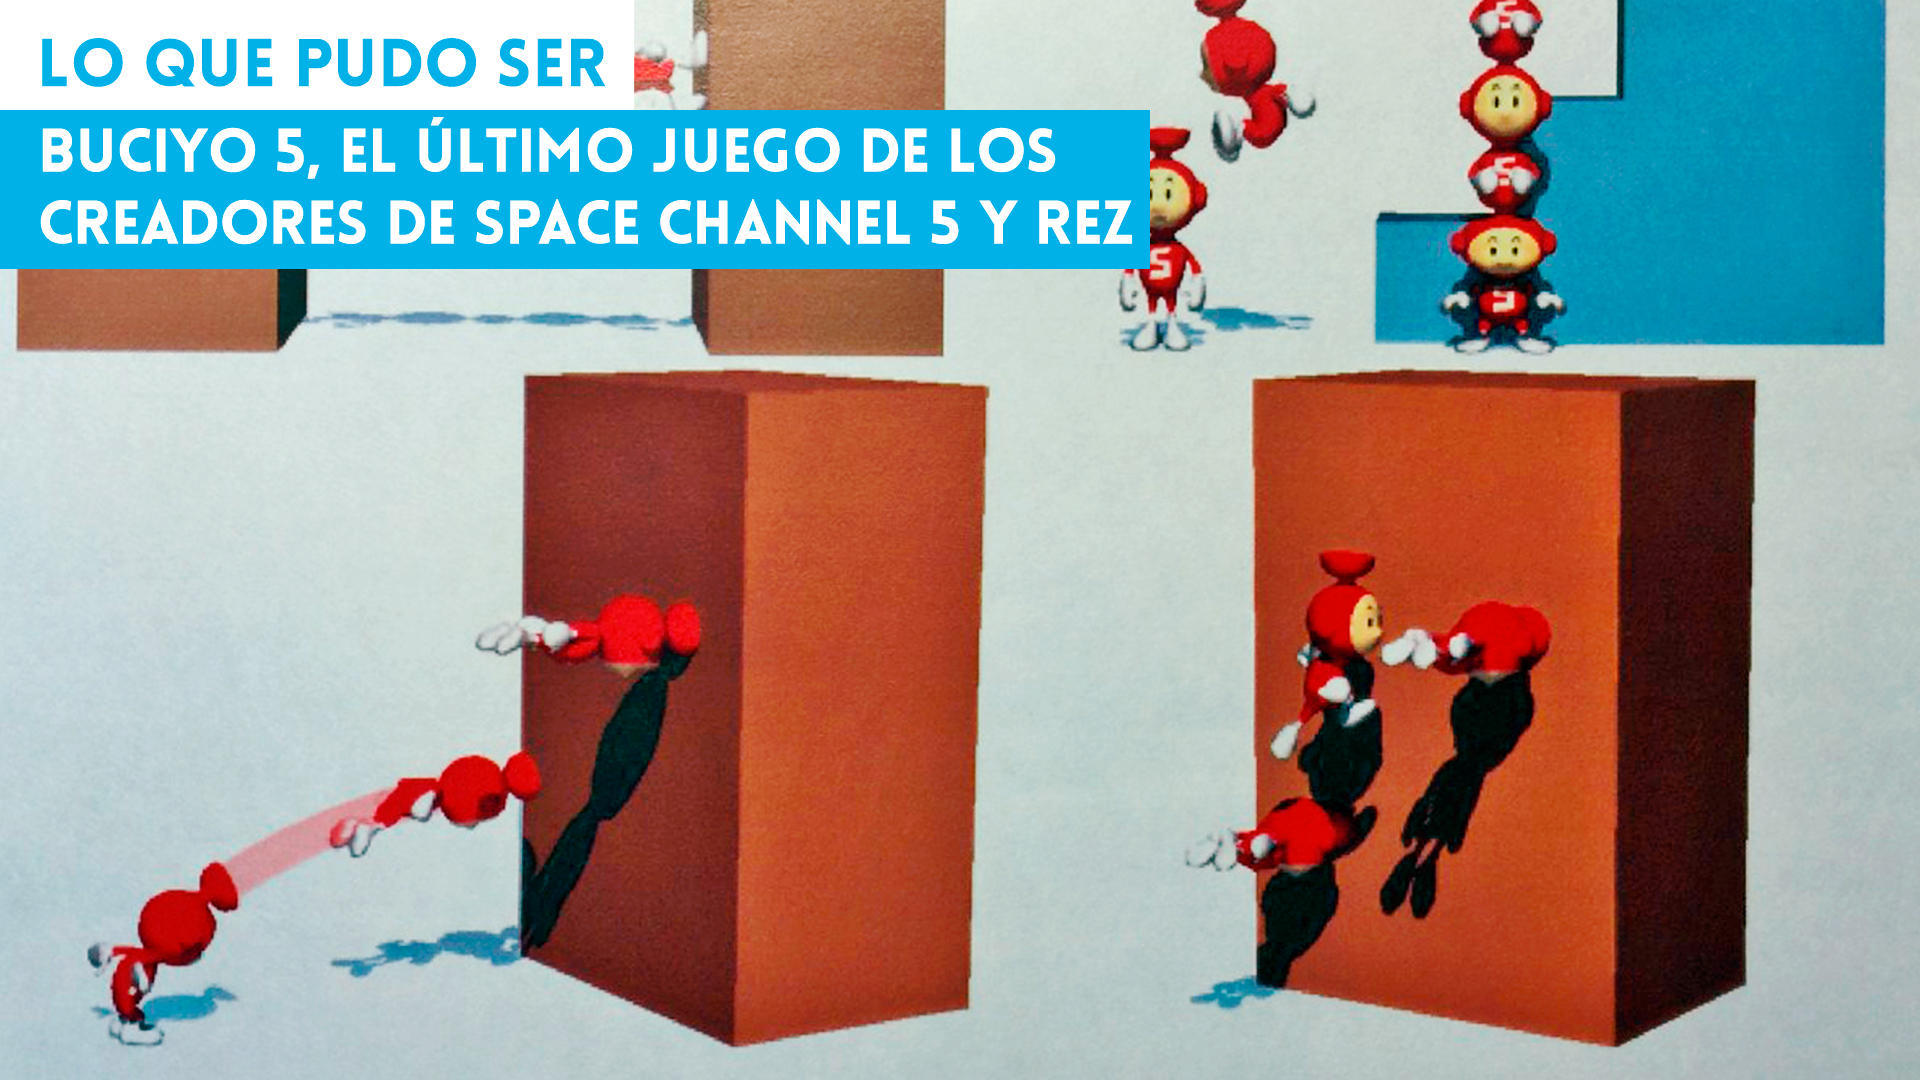 Buciyo 5, el ltimo juego de los creadores de Space Channel 5 y Rez